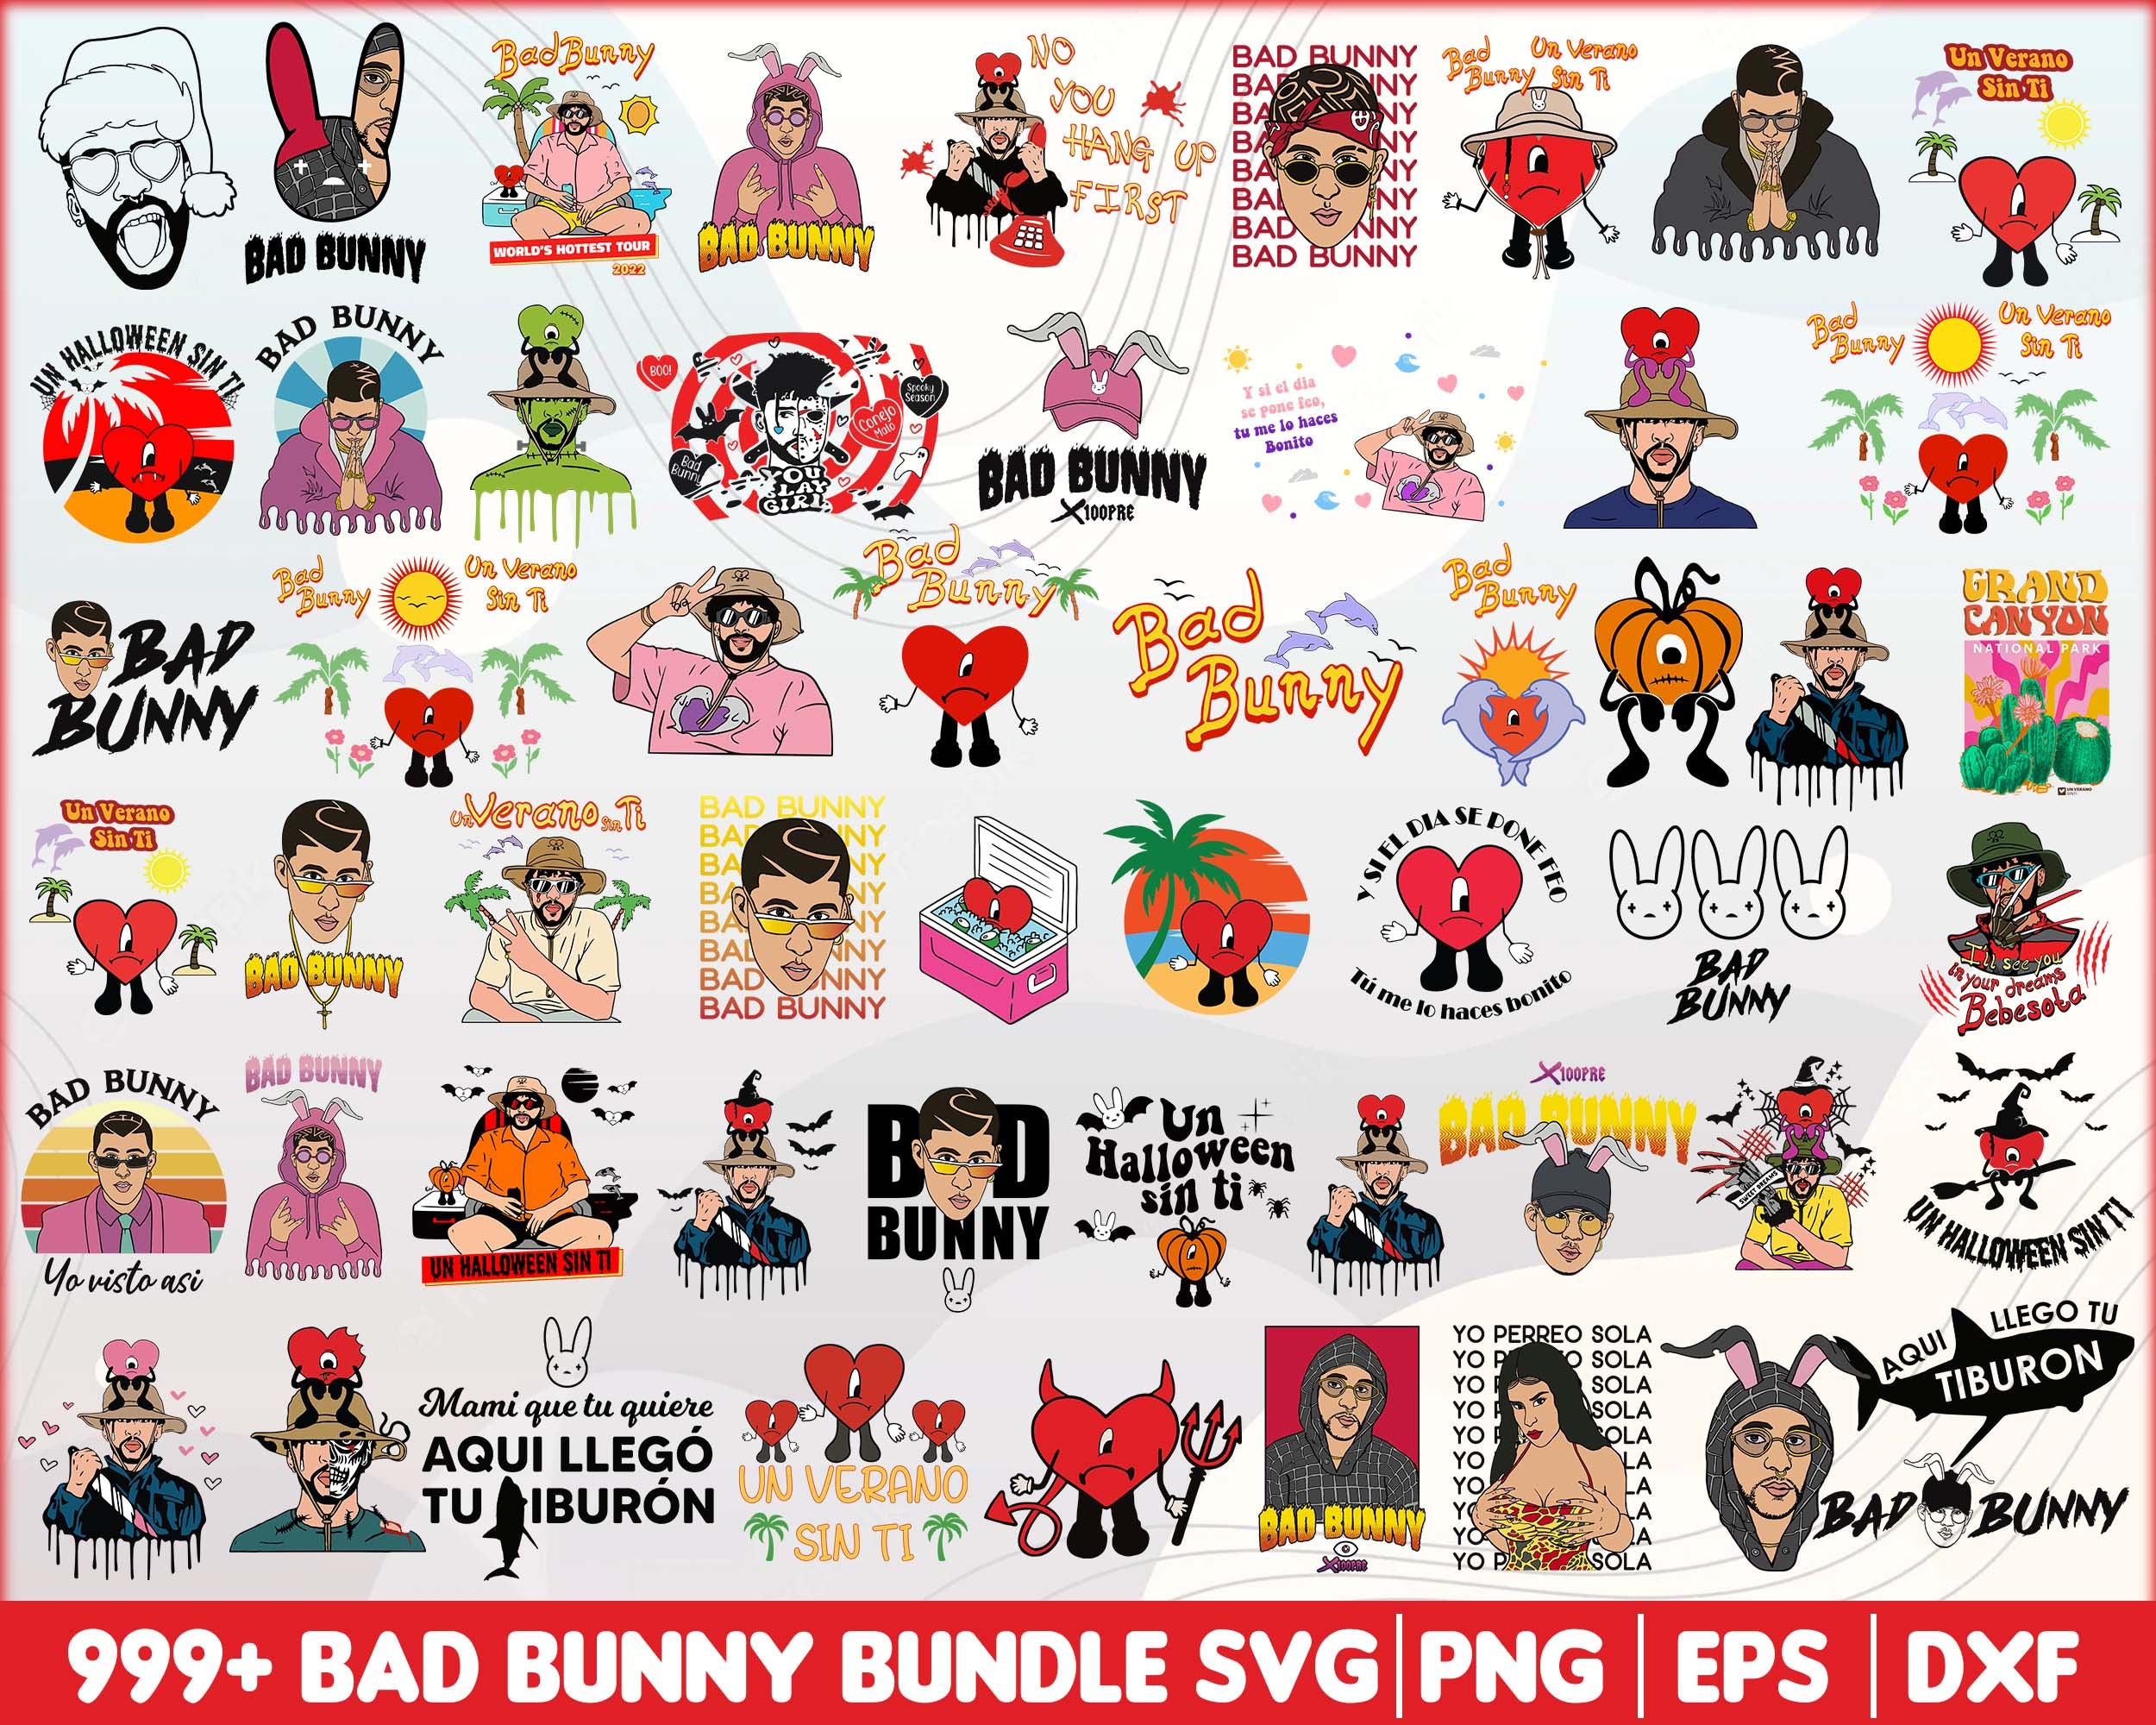 Ultimate Bad Bunny SVG, Bad Bunny svg, png, eps, dxf, Digital download.